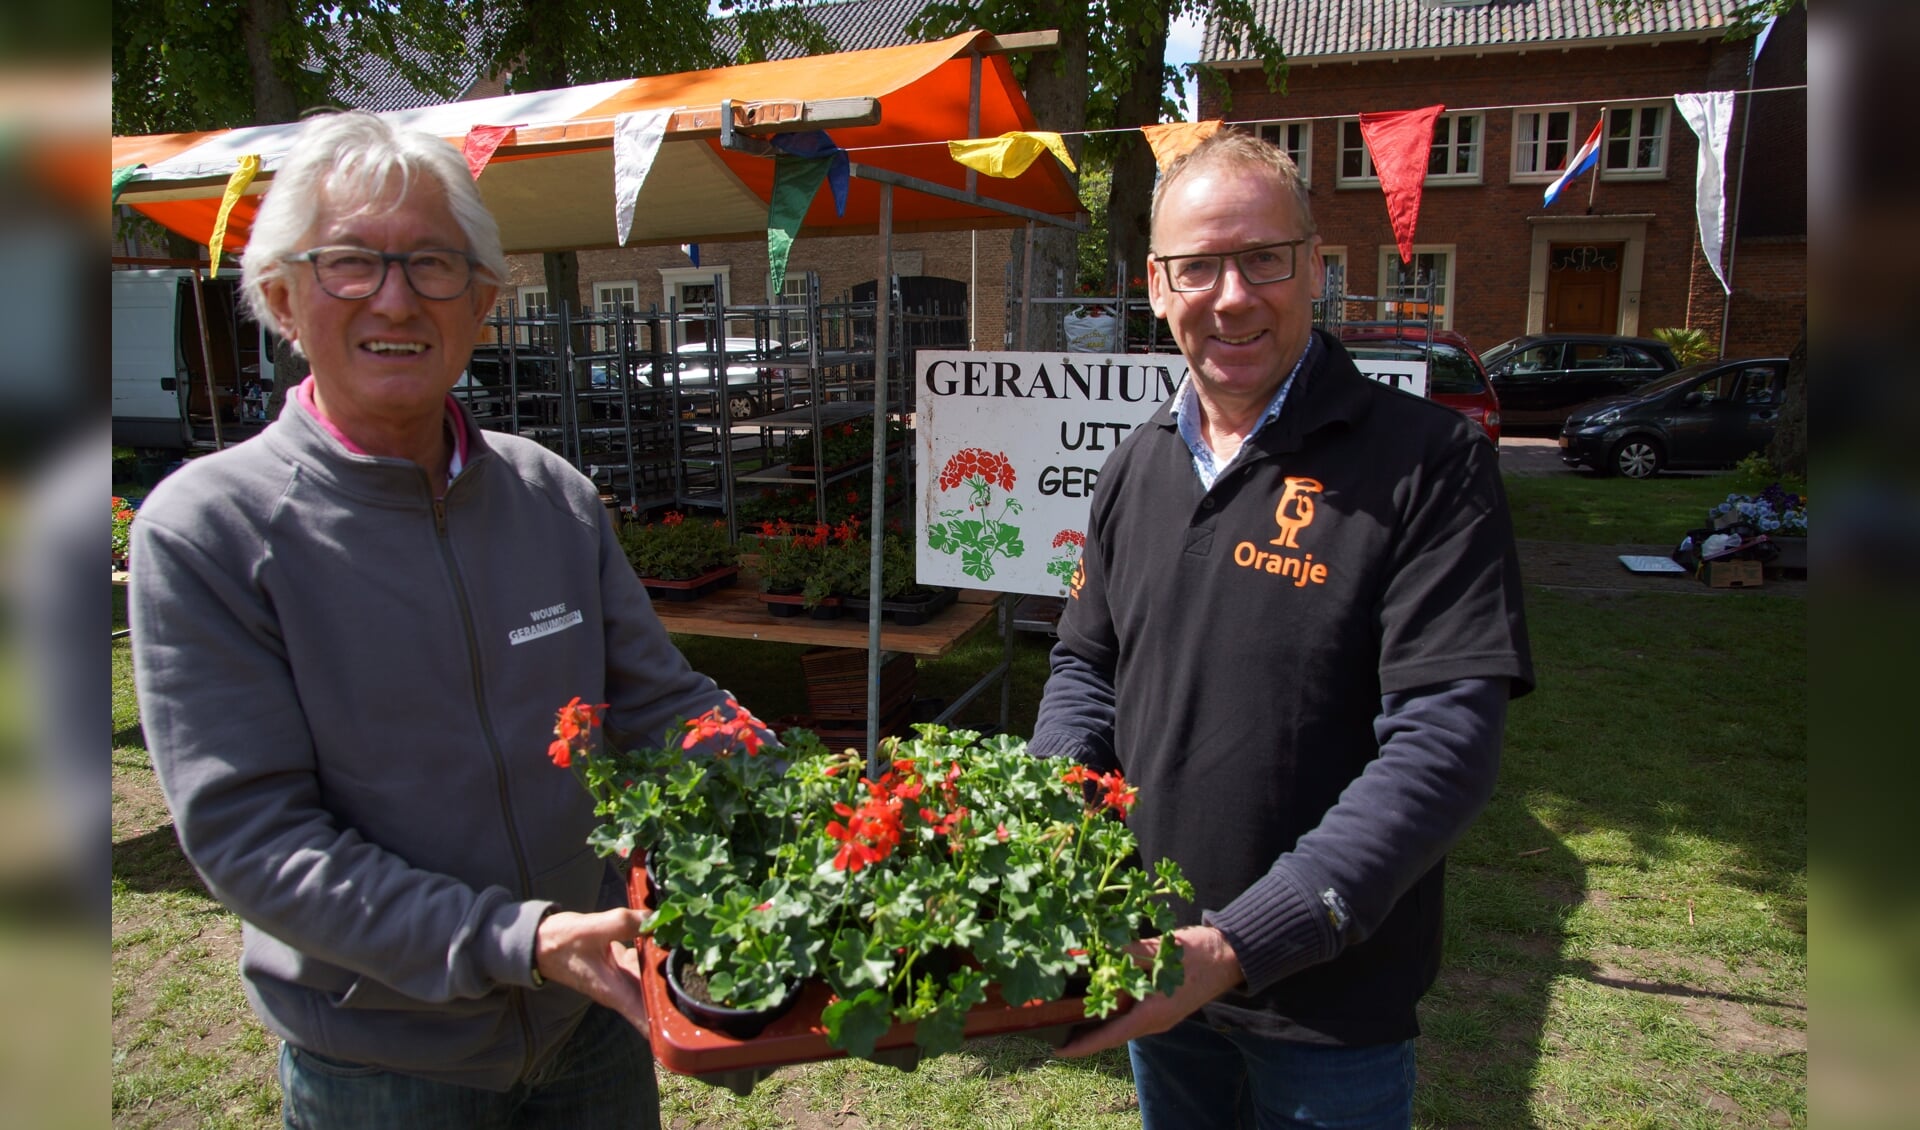 Marktmeester Jos Verdonk van de geraniumcommissie overhandigt symbolisch een aantal geraniums aan Peter van Oosterbosch van Harmonie en Malletkorps Oranje, die volgend jaar de organisatie overnemen. 